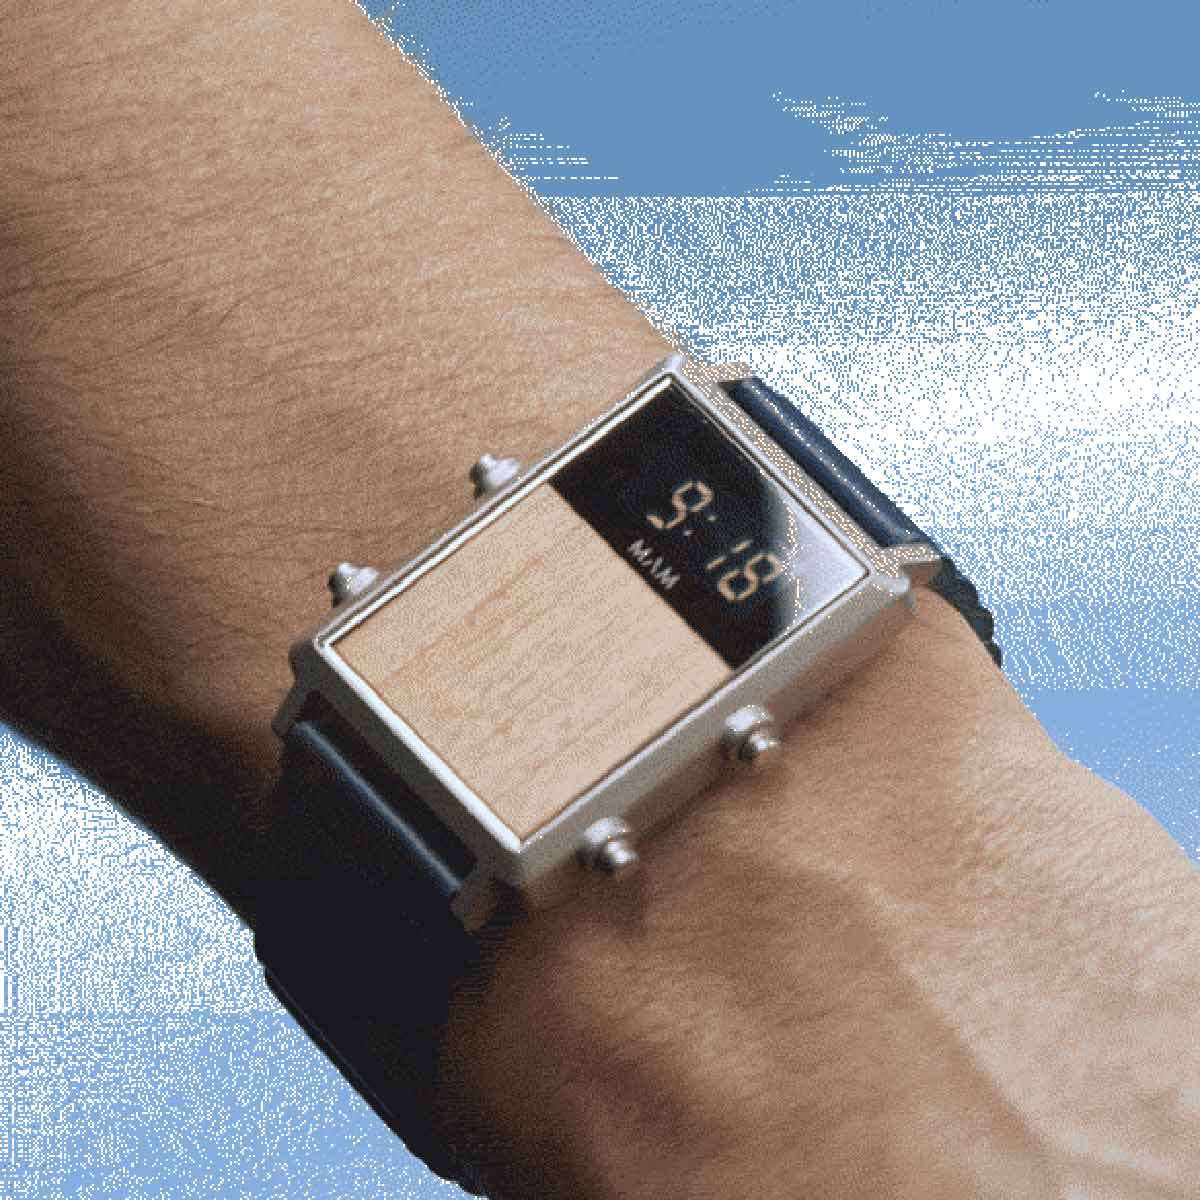 キミもマーティに 映画 バック トゥ ザ フューチャー の公式腕時計発売 時計 Fineboys Online